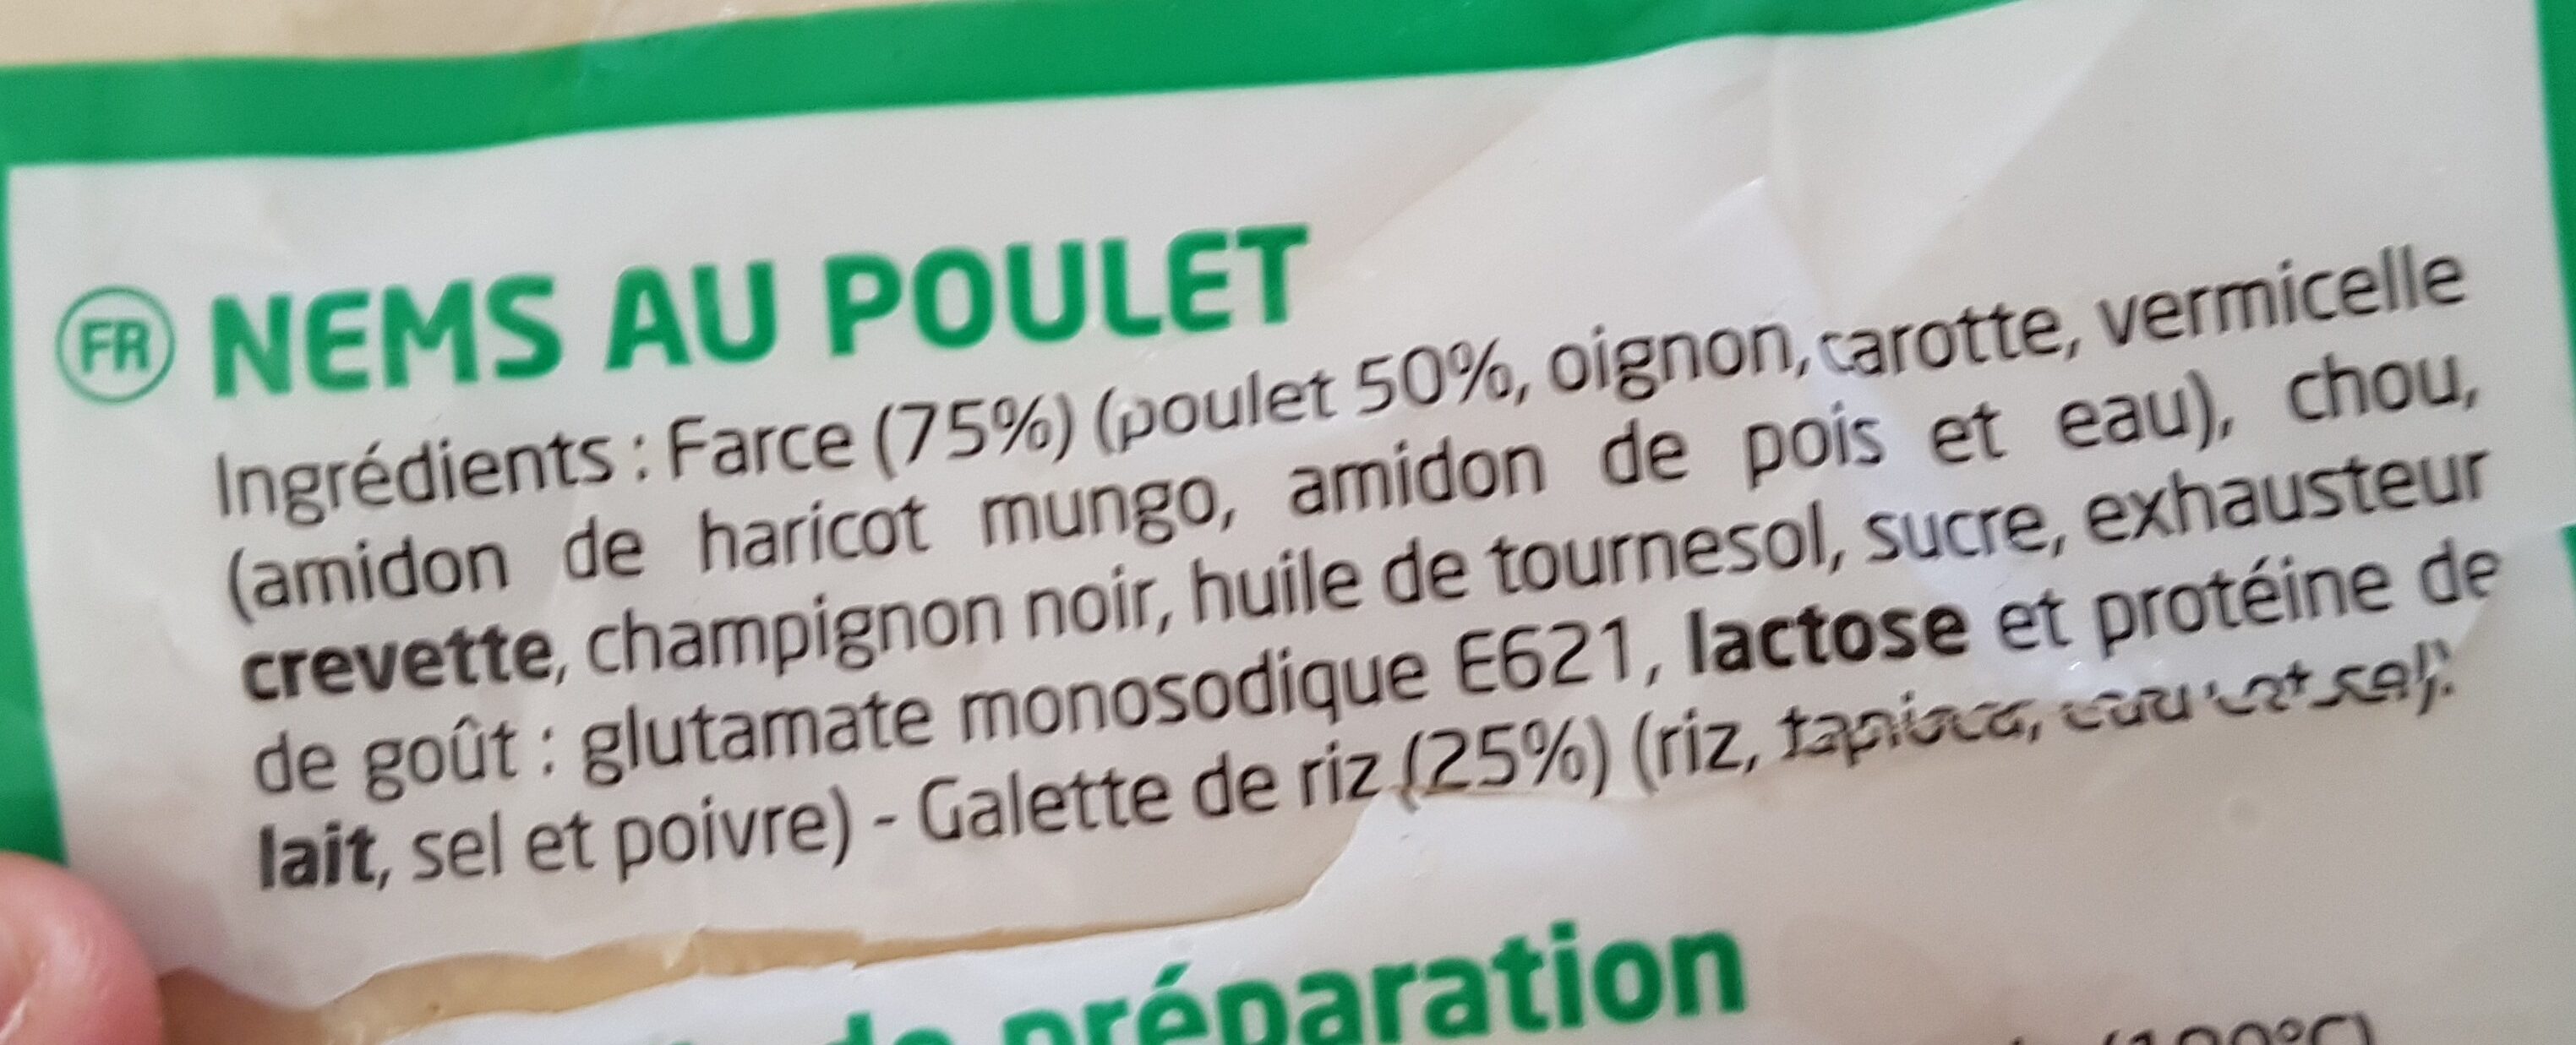 NEMS AU POULET - Ingredients - fr